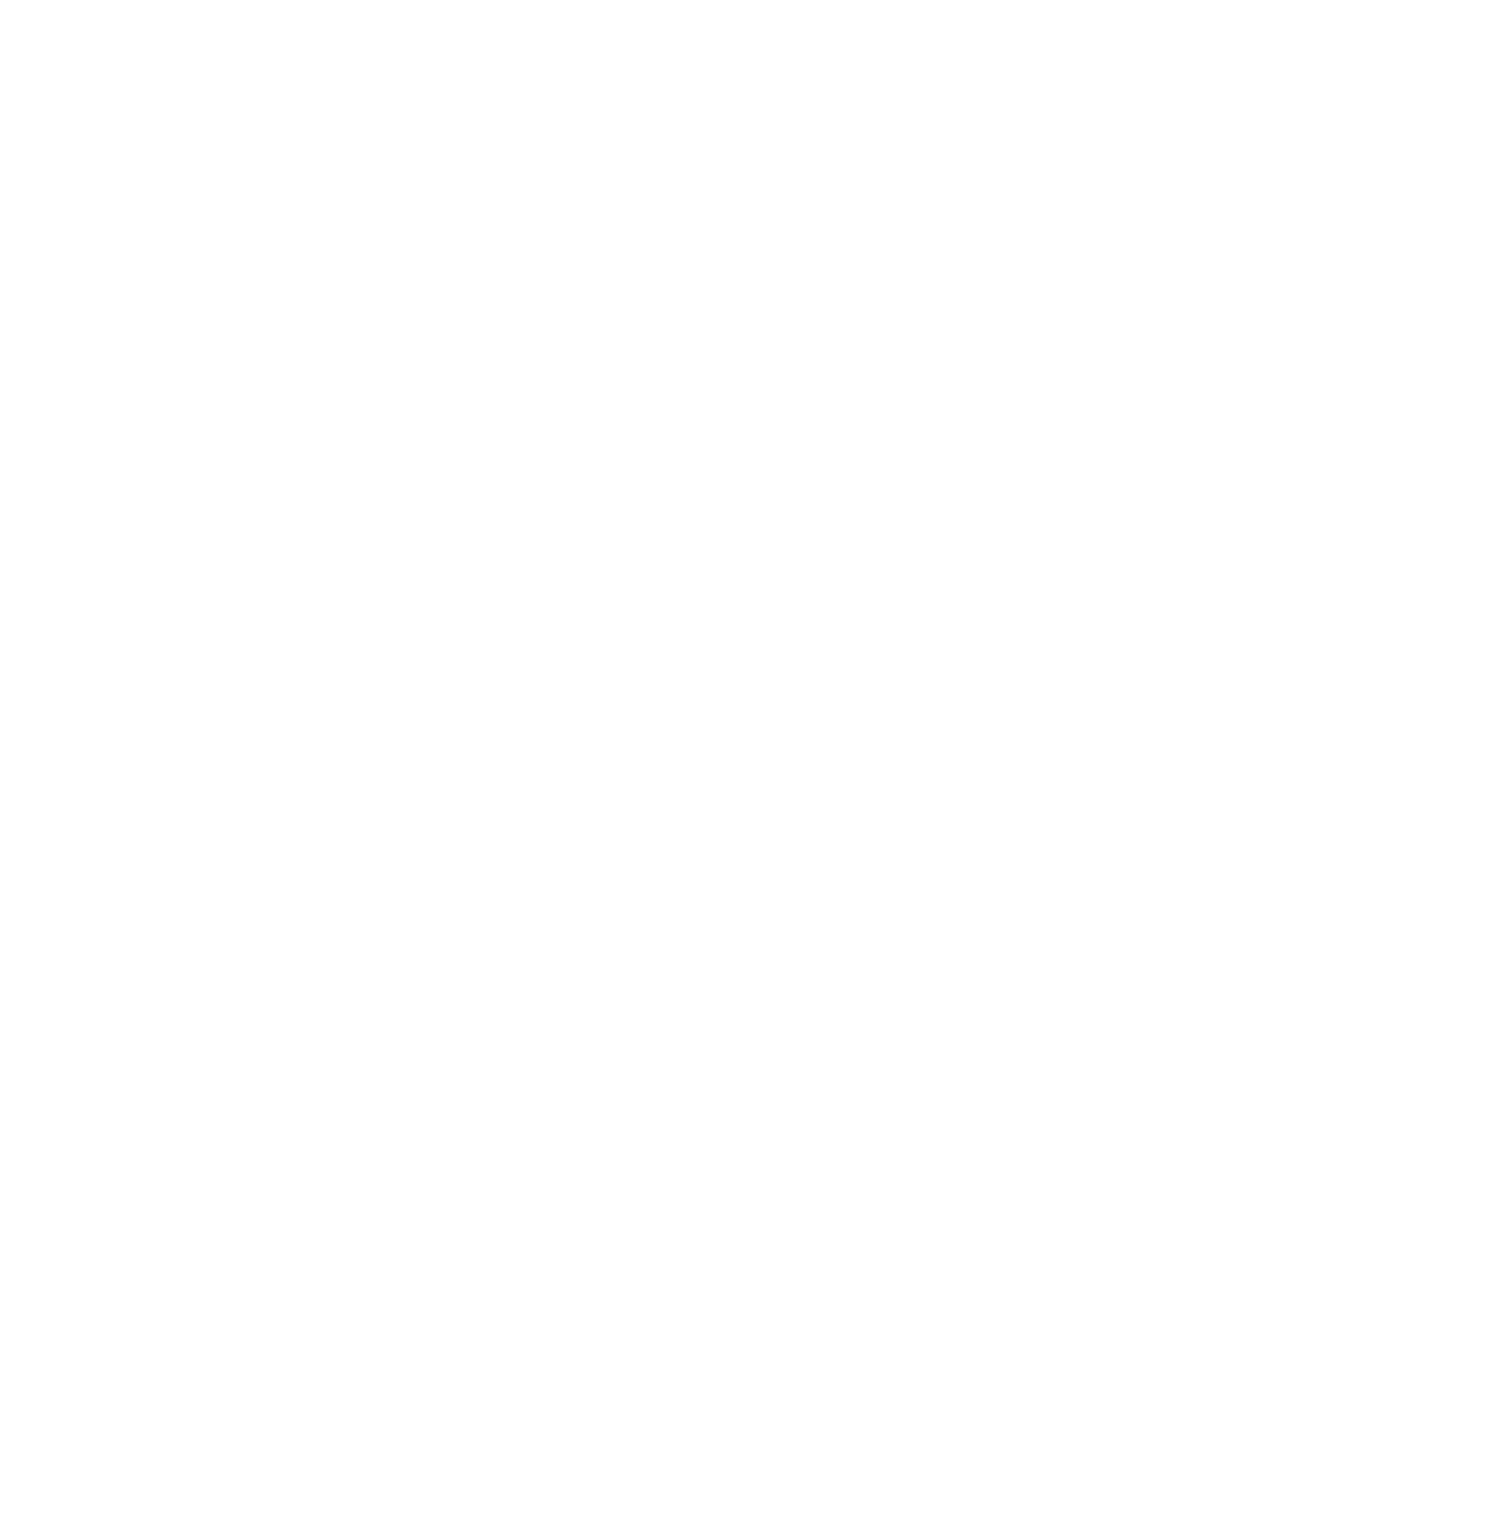 Roalden Skigard